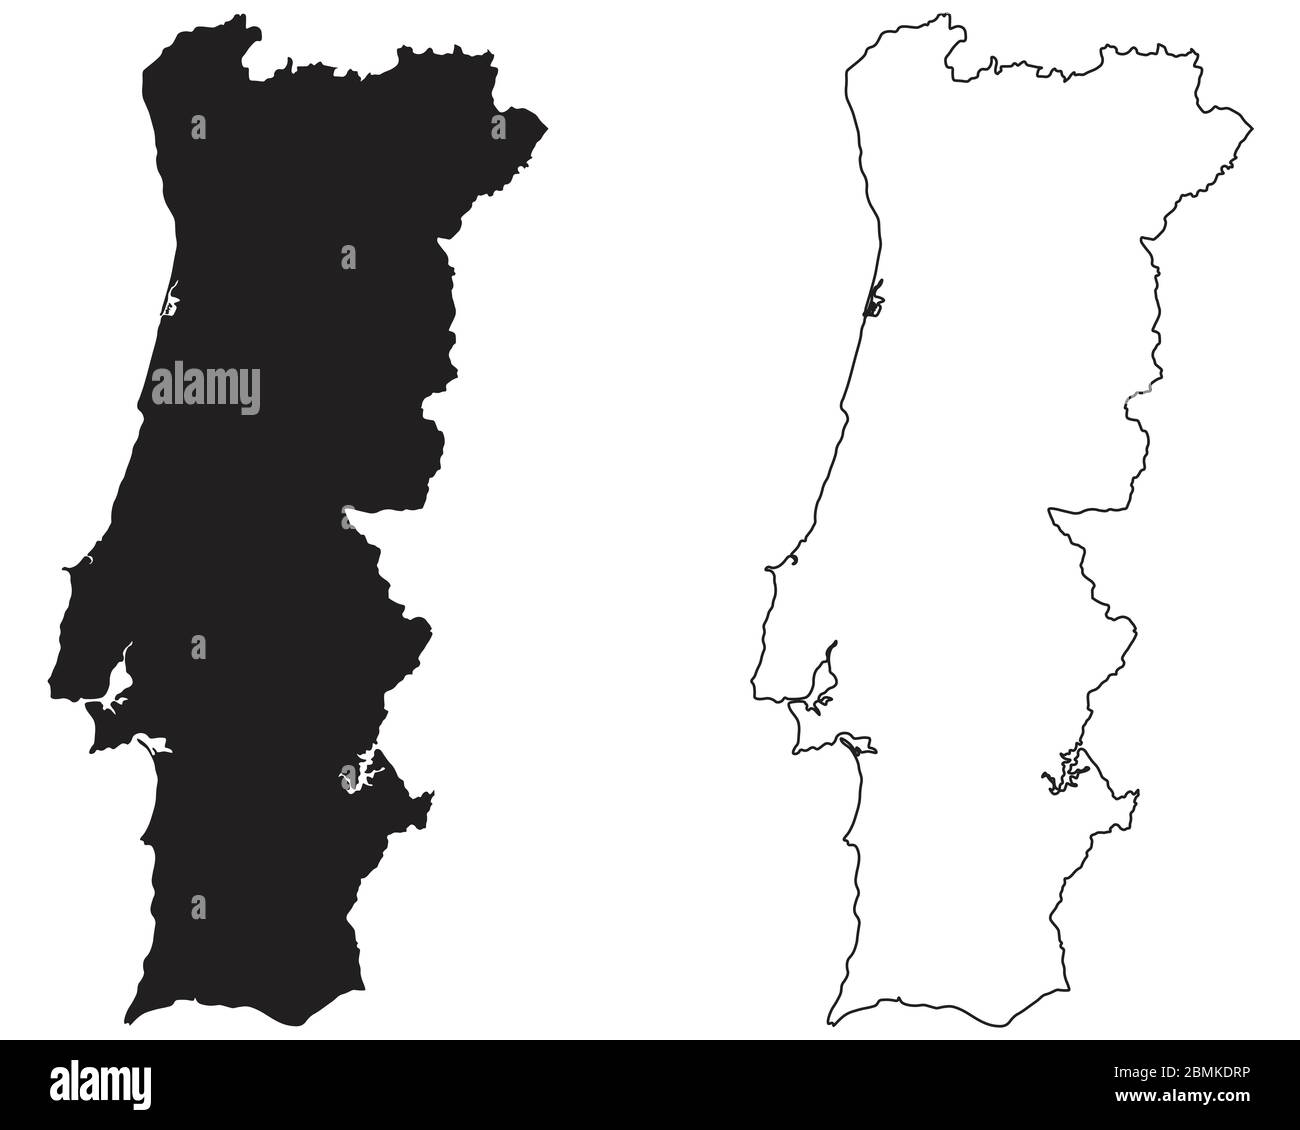 Carte du pays du Portugal. Silhouette et contour noirs isolés sur fond blanc. Vecteur EPS Illustration de Vecteur